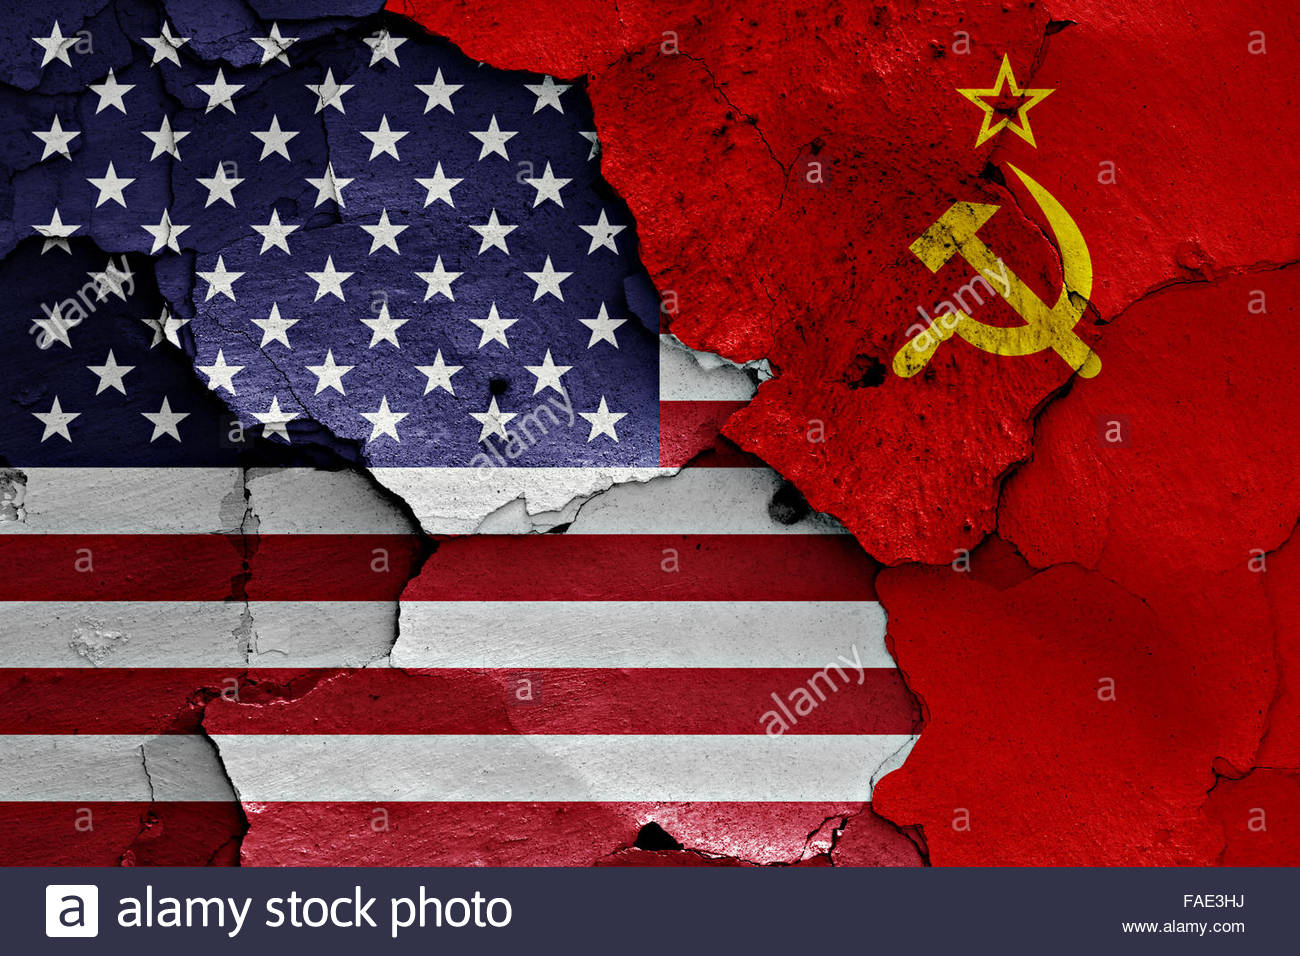 Bandera EEUU-URSS